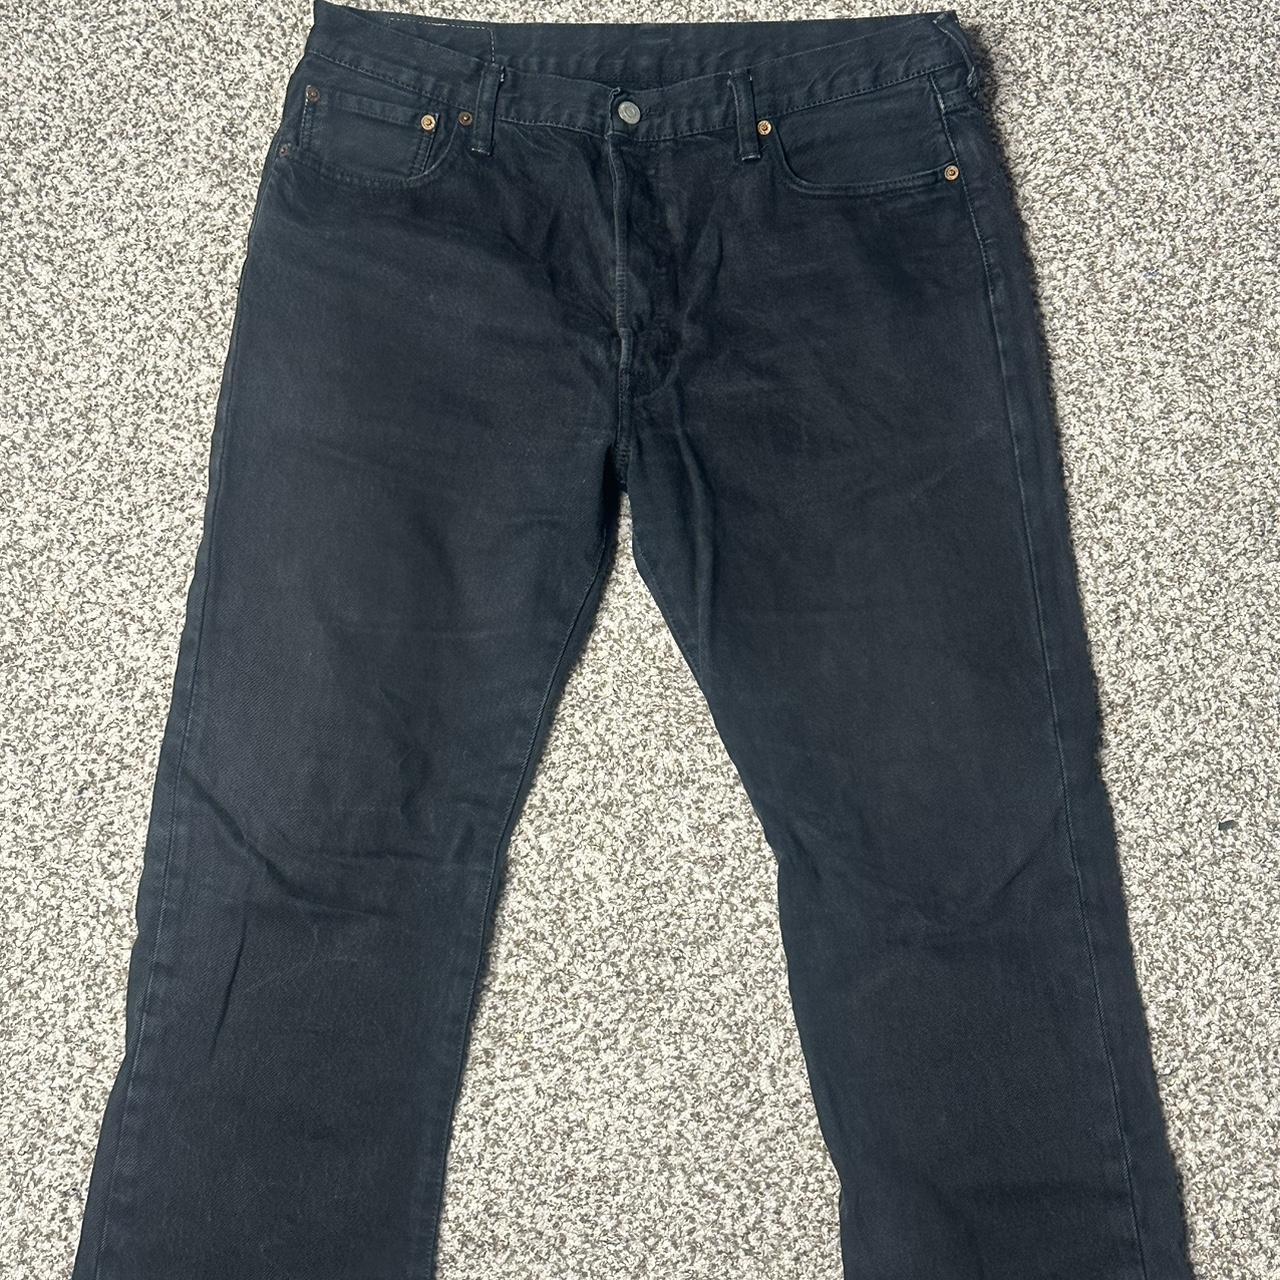 Vintage Levi’s 501 Jeans Size W36 L32 ESTIMATED... - Depop